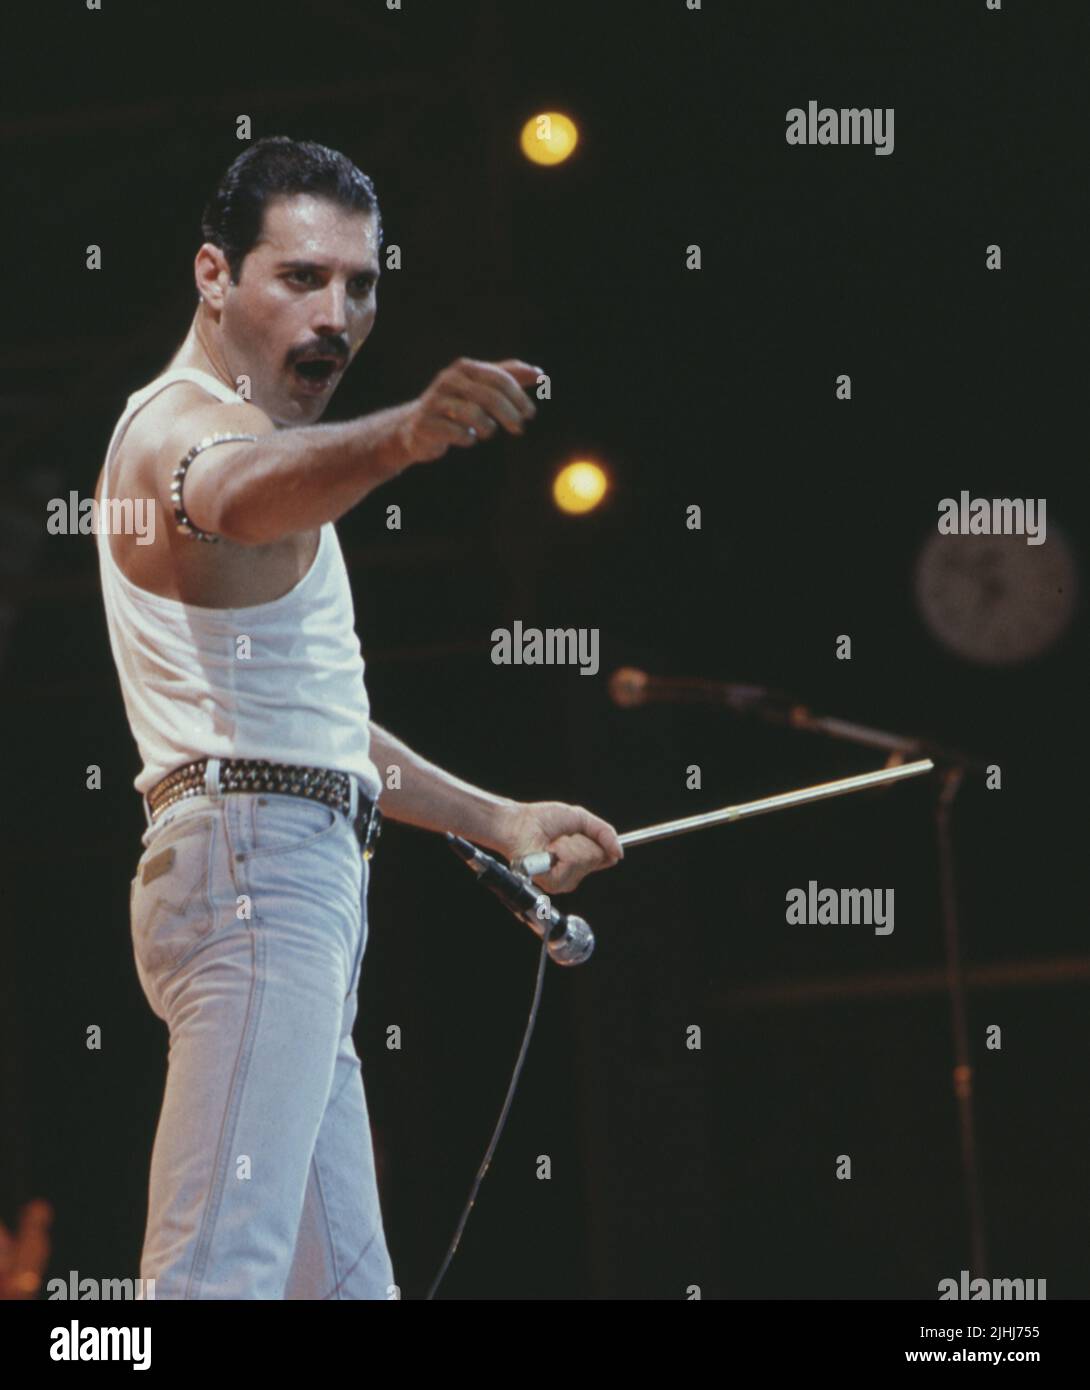 Foto de archivo de fecha 13/7/1985 de Freddie Mercury, de la banda de pop Queen, actuando en el escenario durante el concierto Live Aid. Las leyendas británicas del rock Queen han hecho historia al convertirse en el primer álbum en superar siete millones de ventas de cartas en el Reino Unido. El disco fue roto por el álbum de Queen's Greatest Hits, grabado en 1981, que incluye temas clásicos como We Will Rock You, Don't Stop Me Now y Bohemian Rhapsody. Fecha de emisión: Martes 19 de julio de 2022. Foto de stock